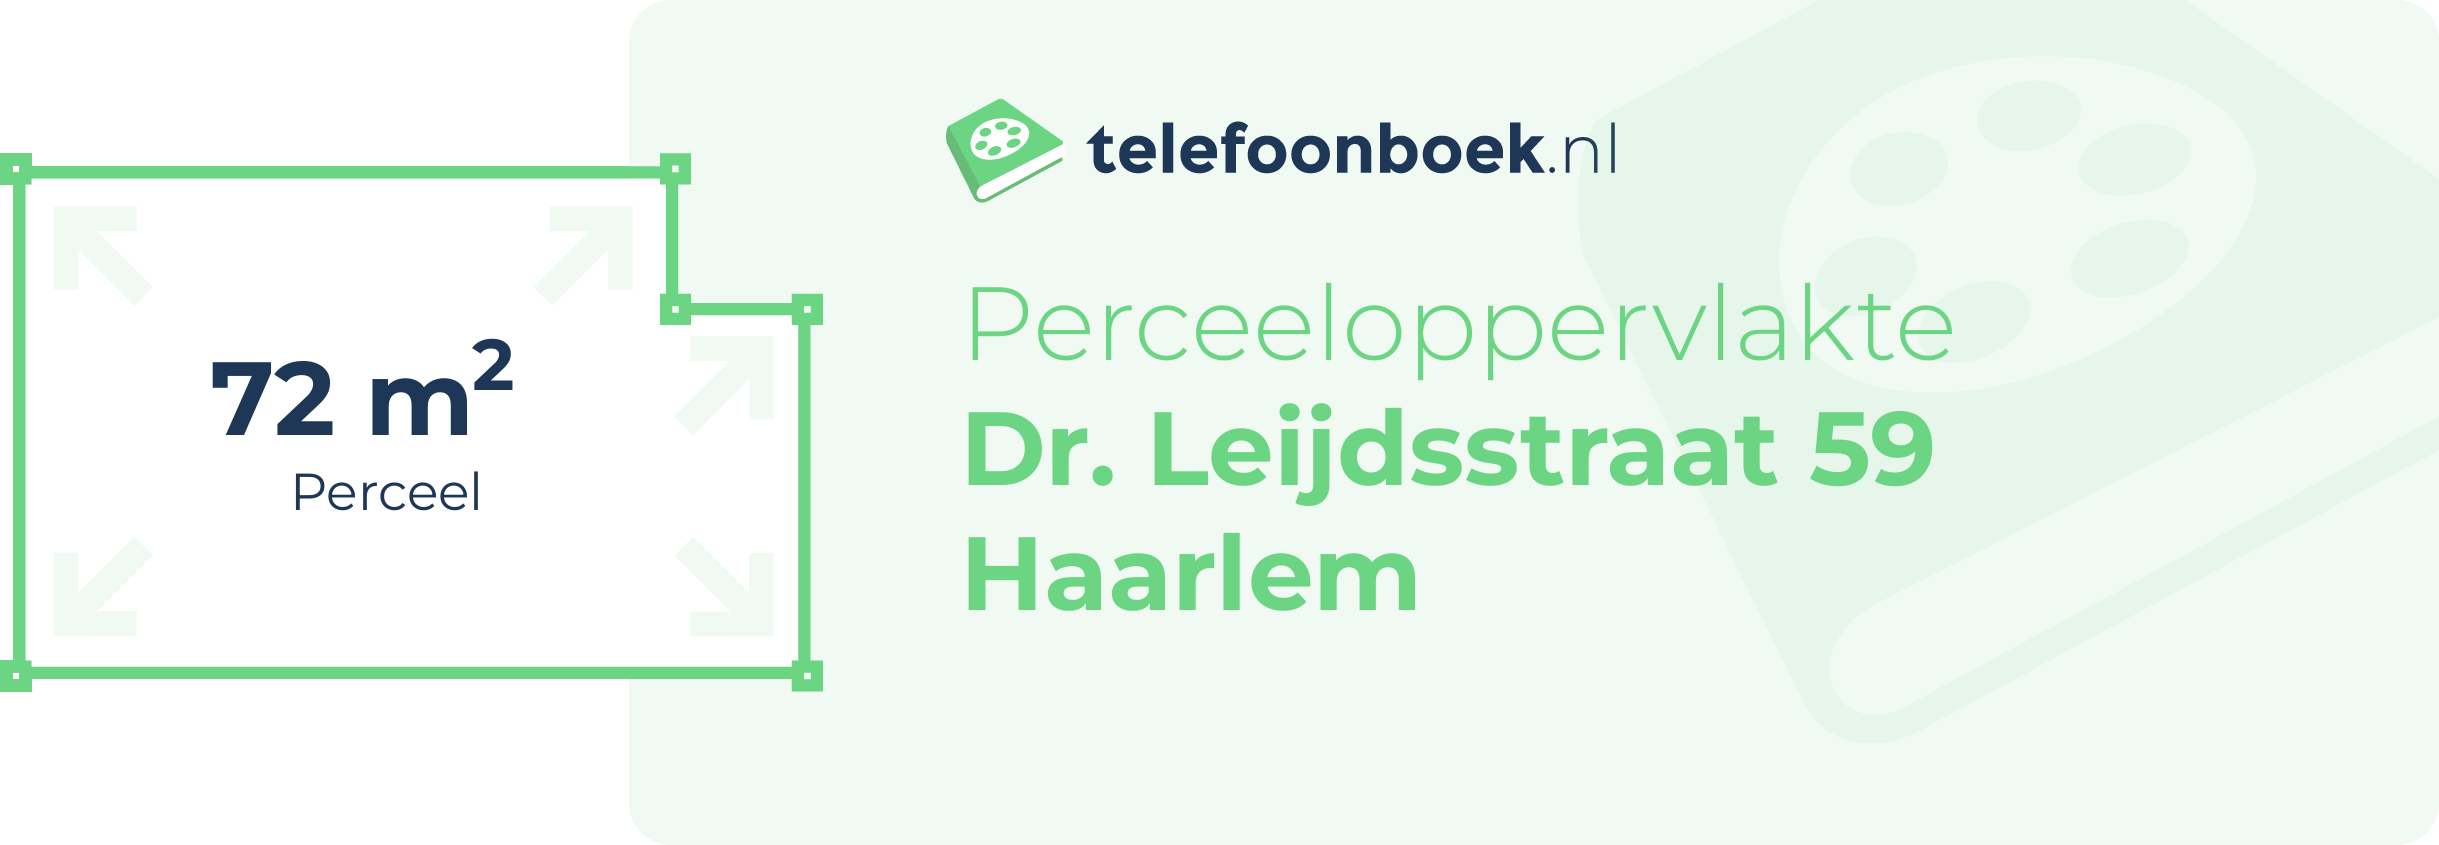 Perceeloppervlakte Dr. Leijdsstraat 59 Haarlem